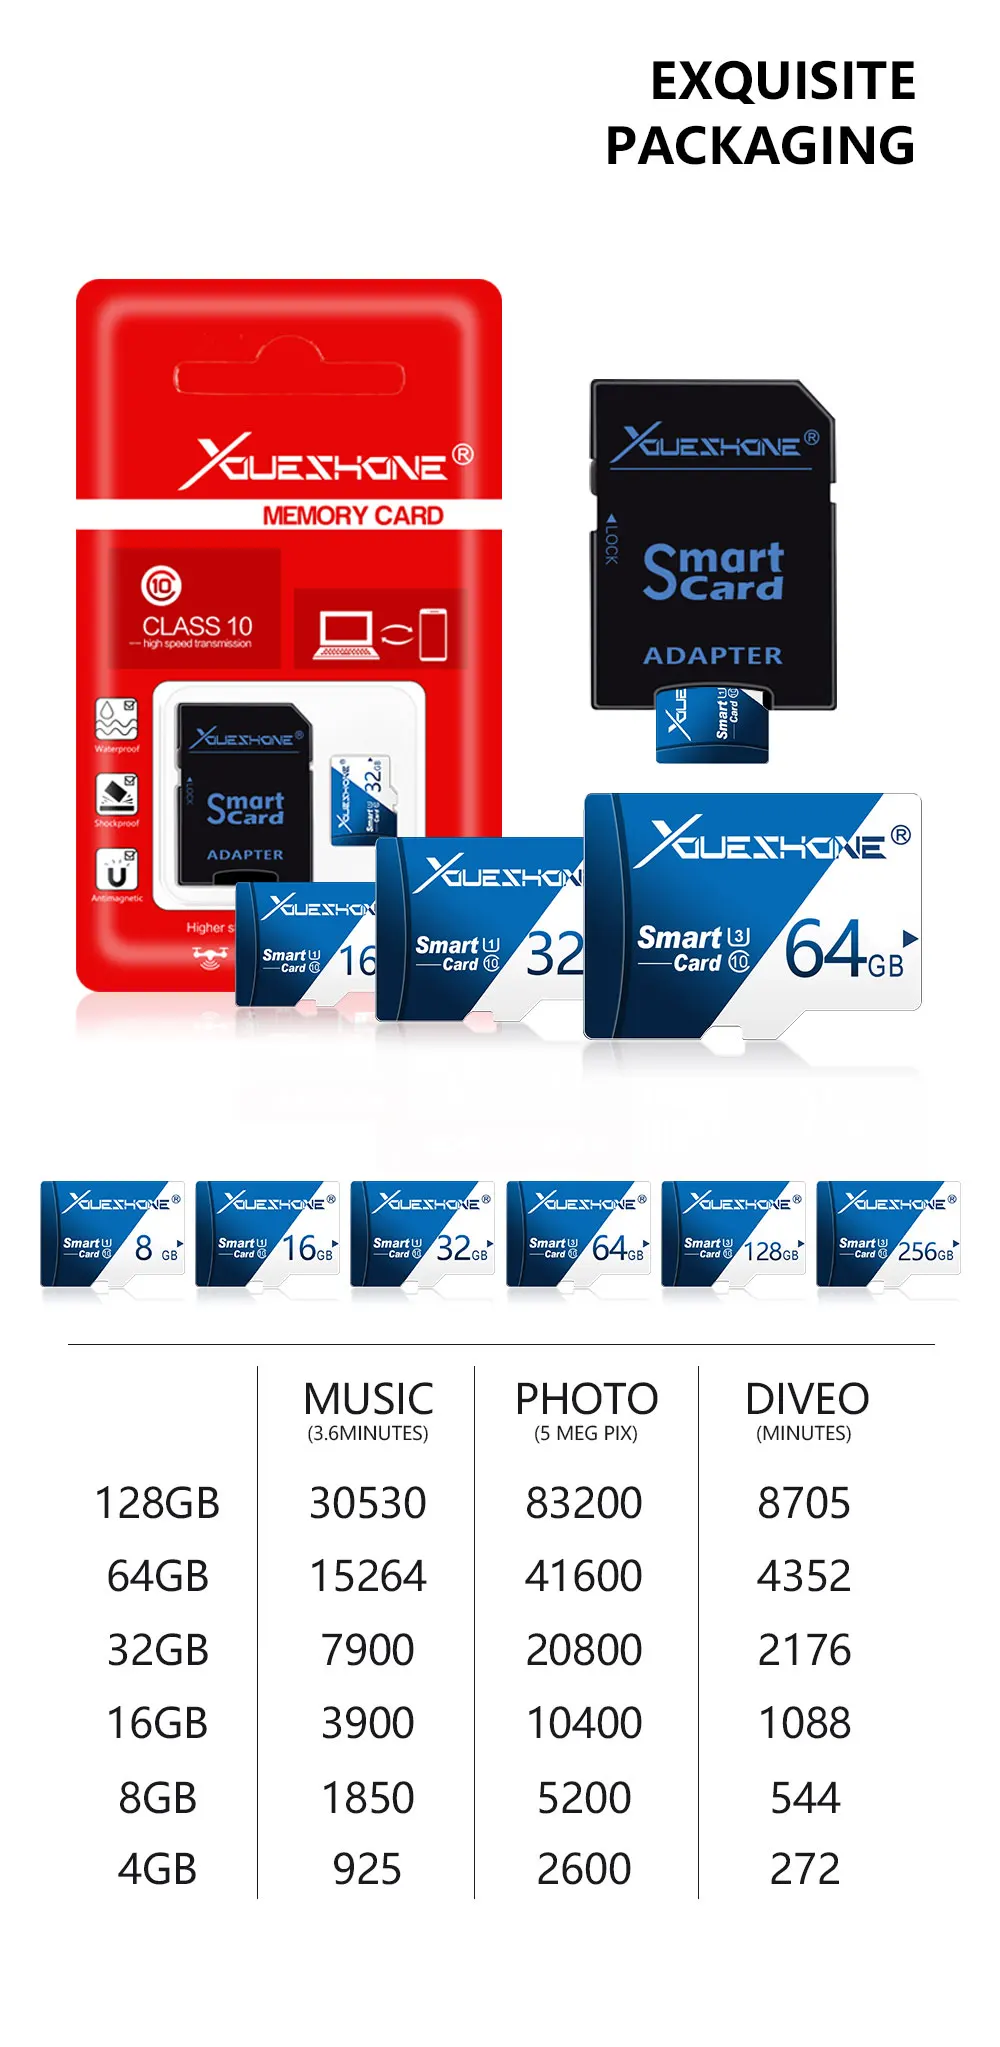 С бесплатным адаптером флэш-памяти Micro SD карта для телефона планшет автомобильный видеорегистратор 8 ГБ/16 Гб Micro SD 32 Гб 64 Гб/128 ГБ Class6-10 карта памяти